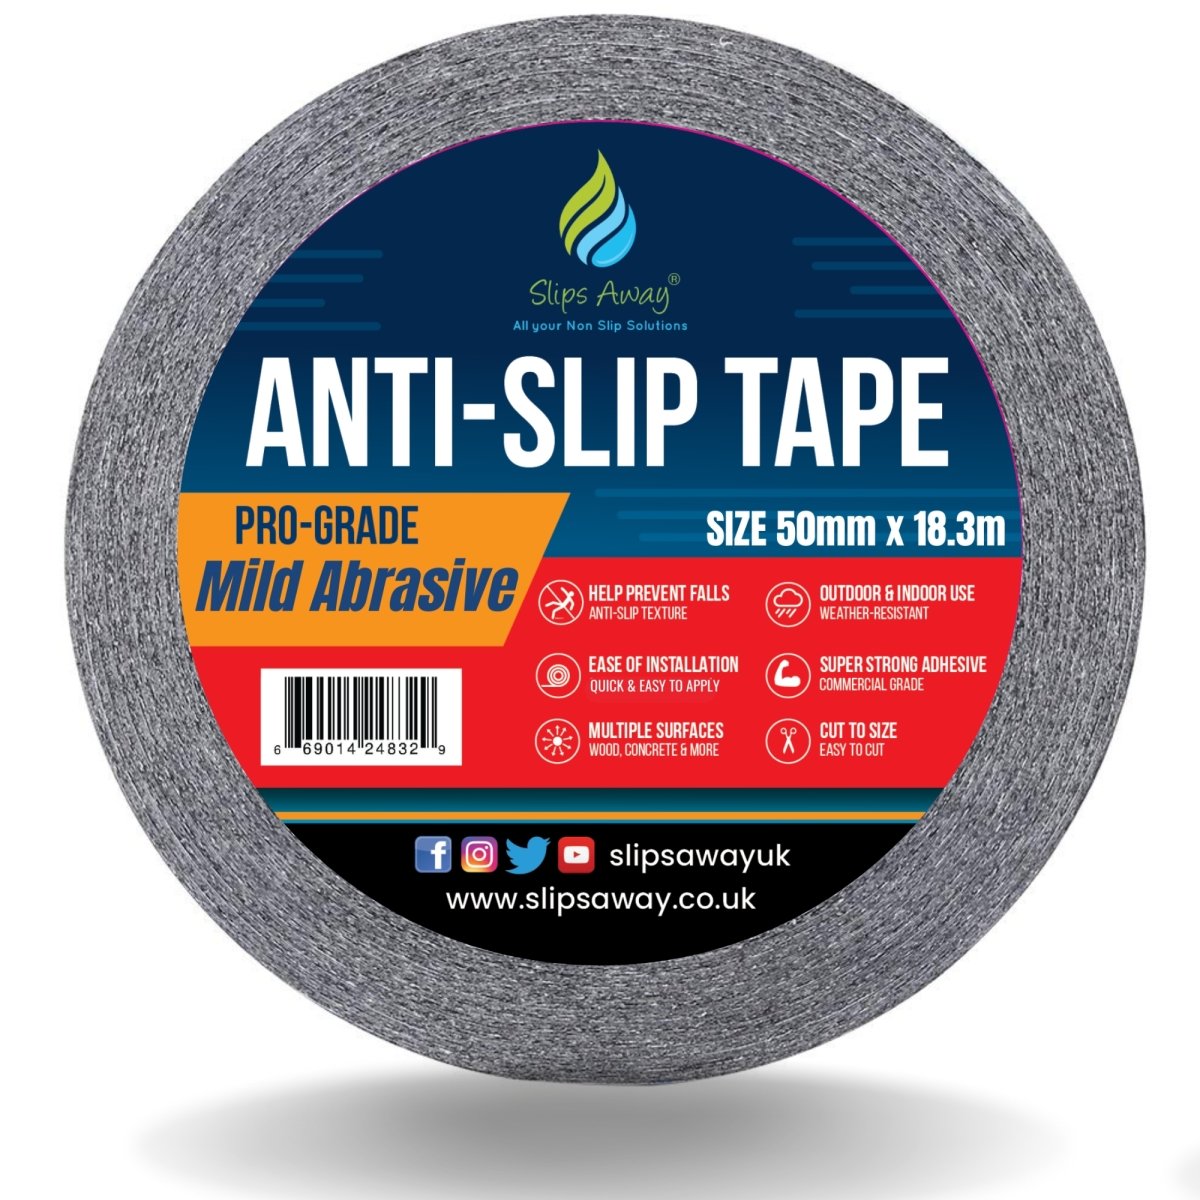 Mild Abrasive Safety-Grip Anti Slip Tape - Slips Away - Anti slip tape - H3432N 25MM X 18.3M -